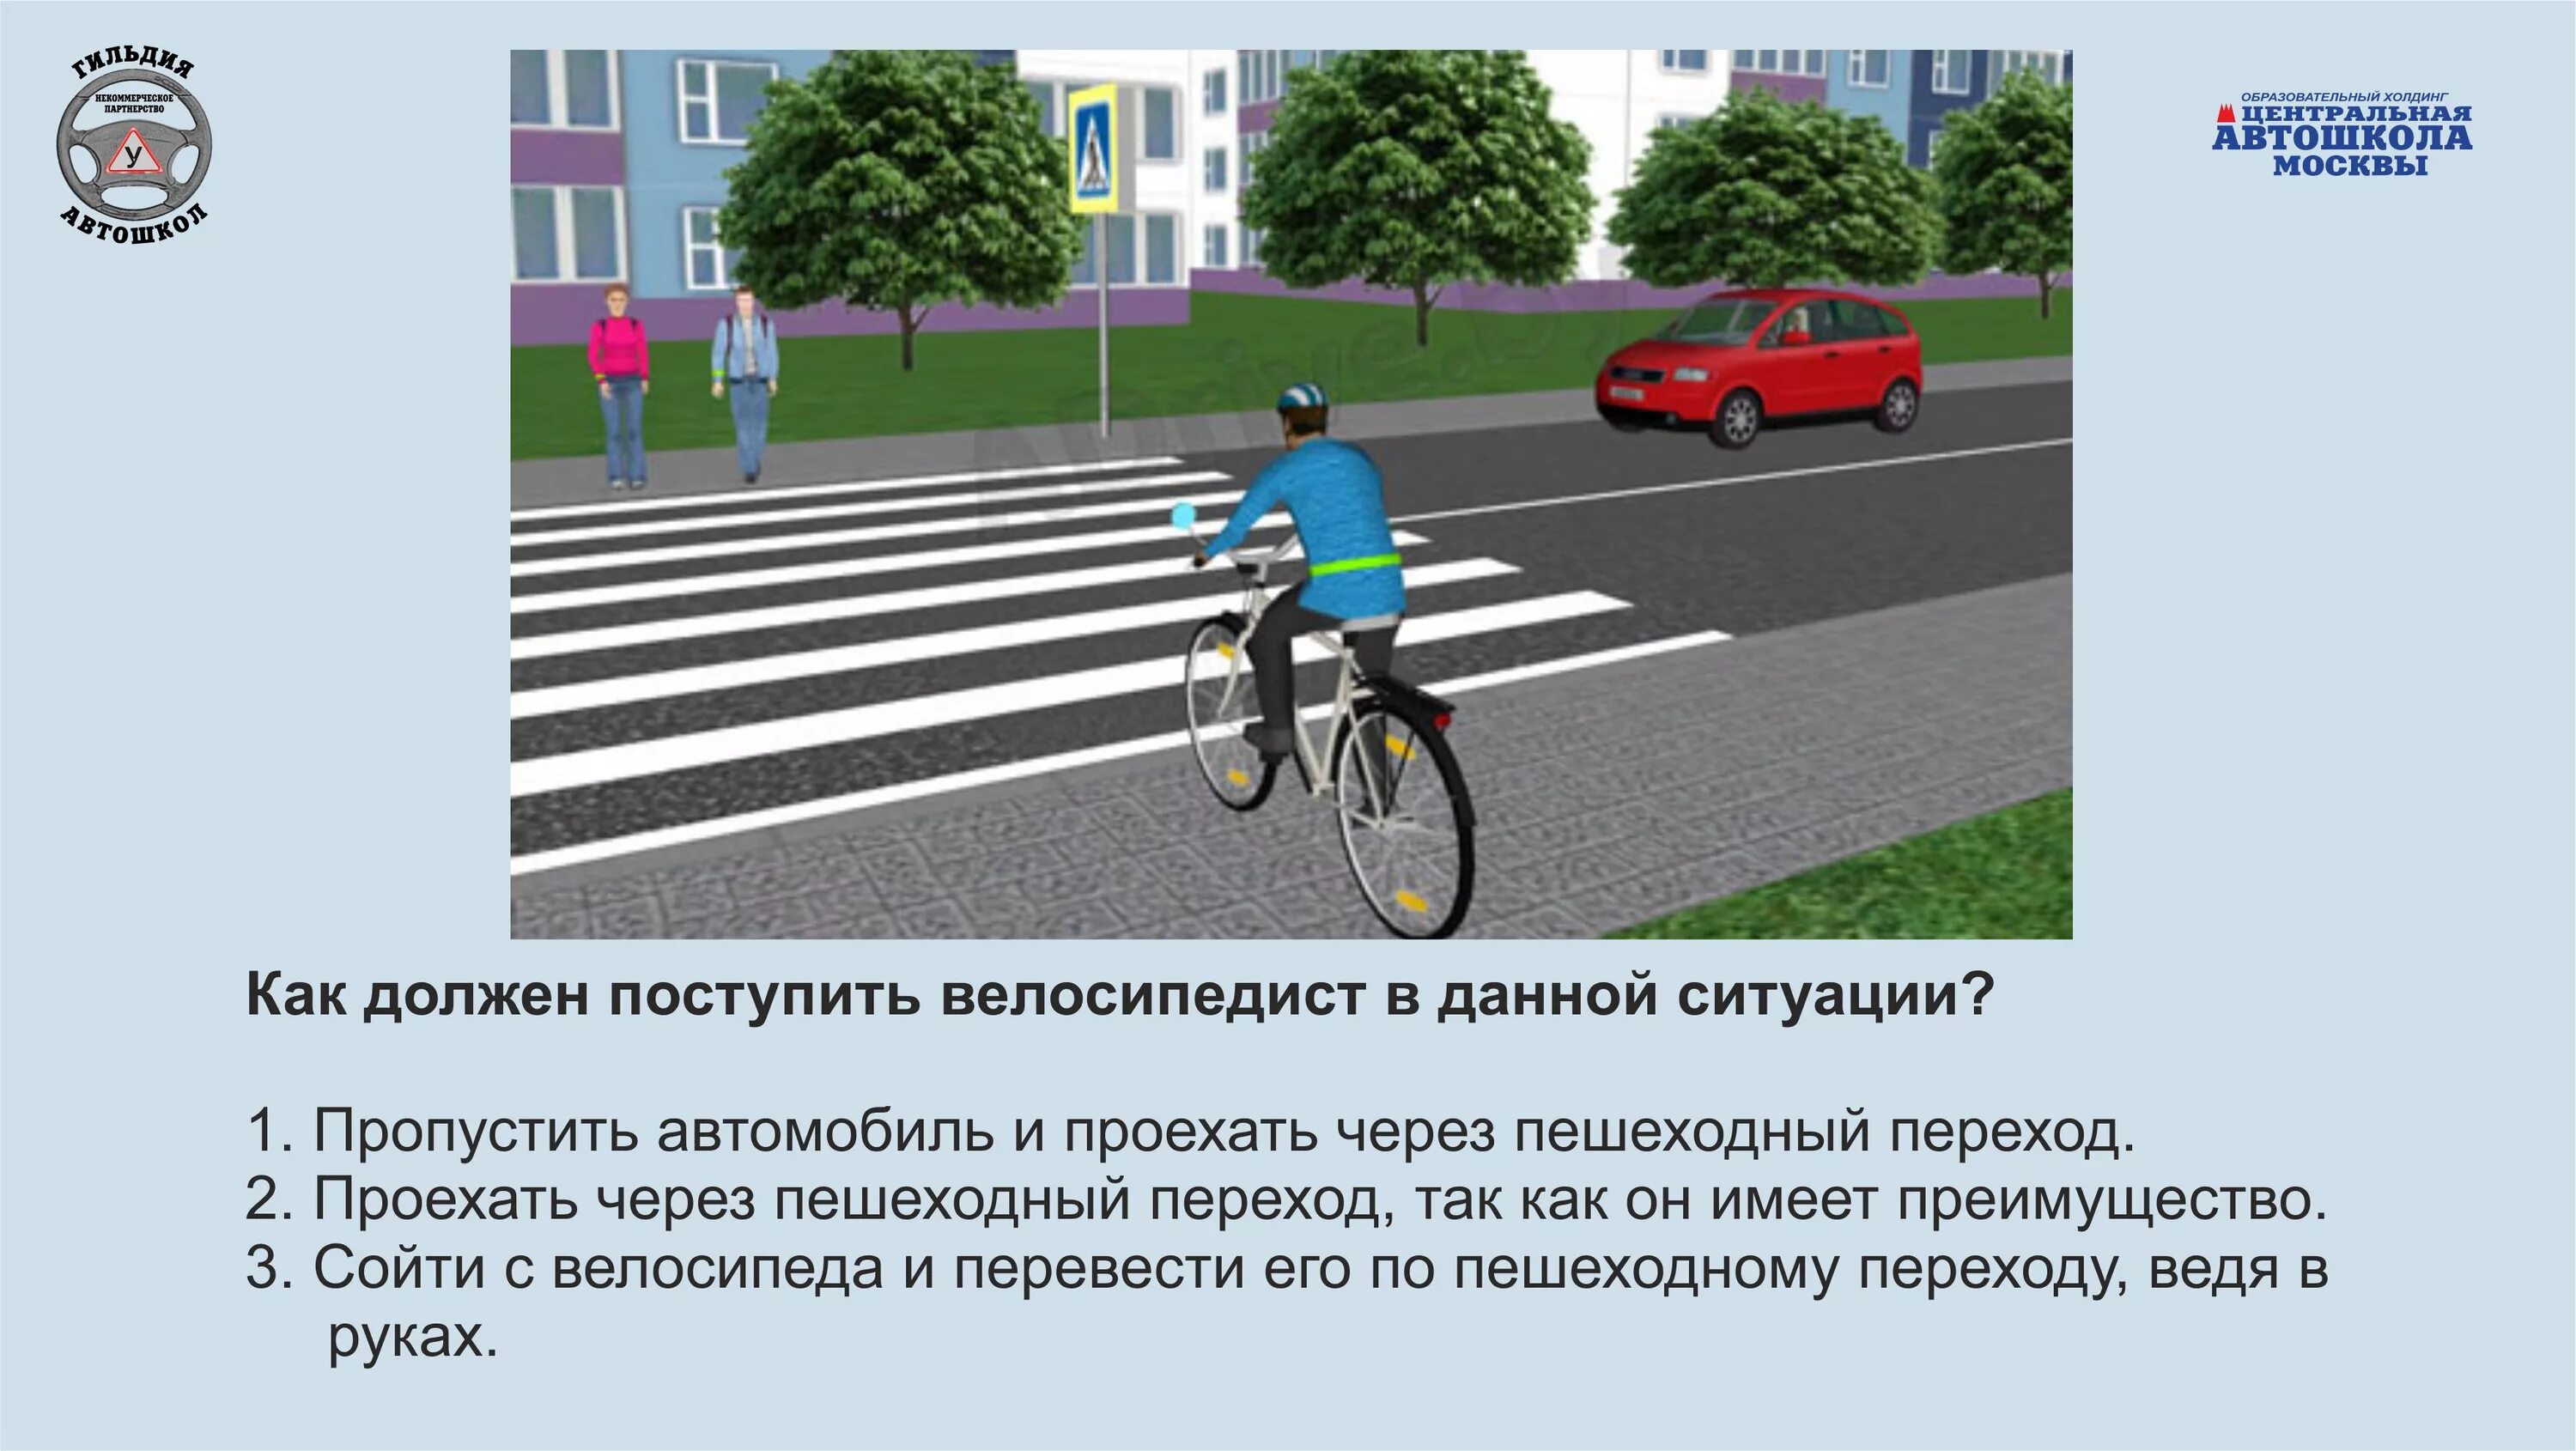 Движение велосипеда по дорогам общего пользования. ПДД для пешеходов и велосипедистов. Дорожные ситуации для велосипедистов. ПДД для велосипедистов. Правило дорожного движения для велосипедистов.